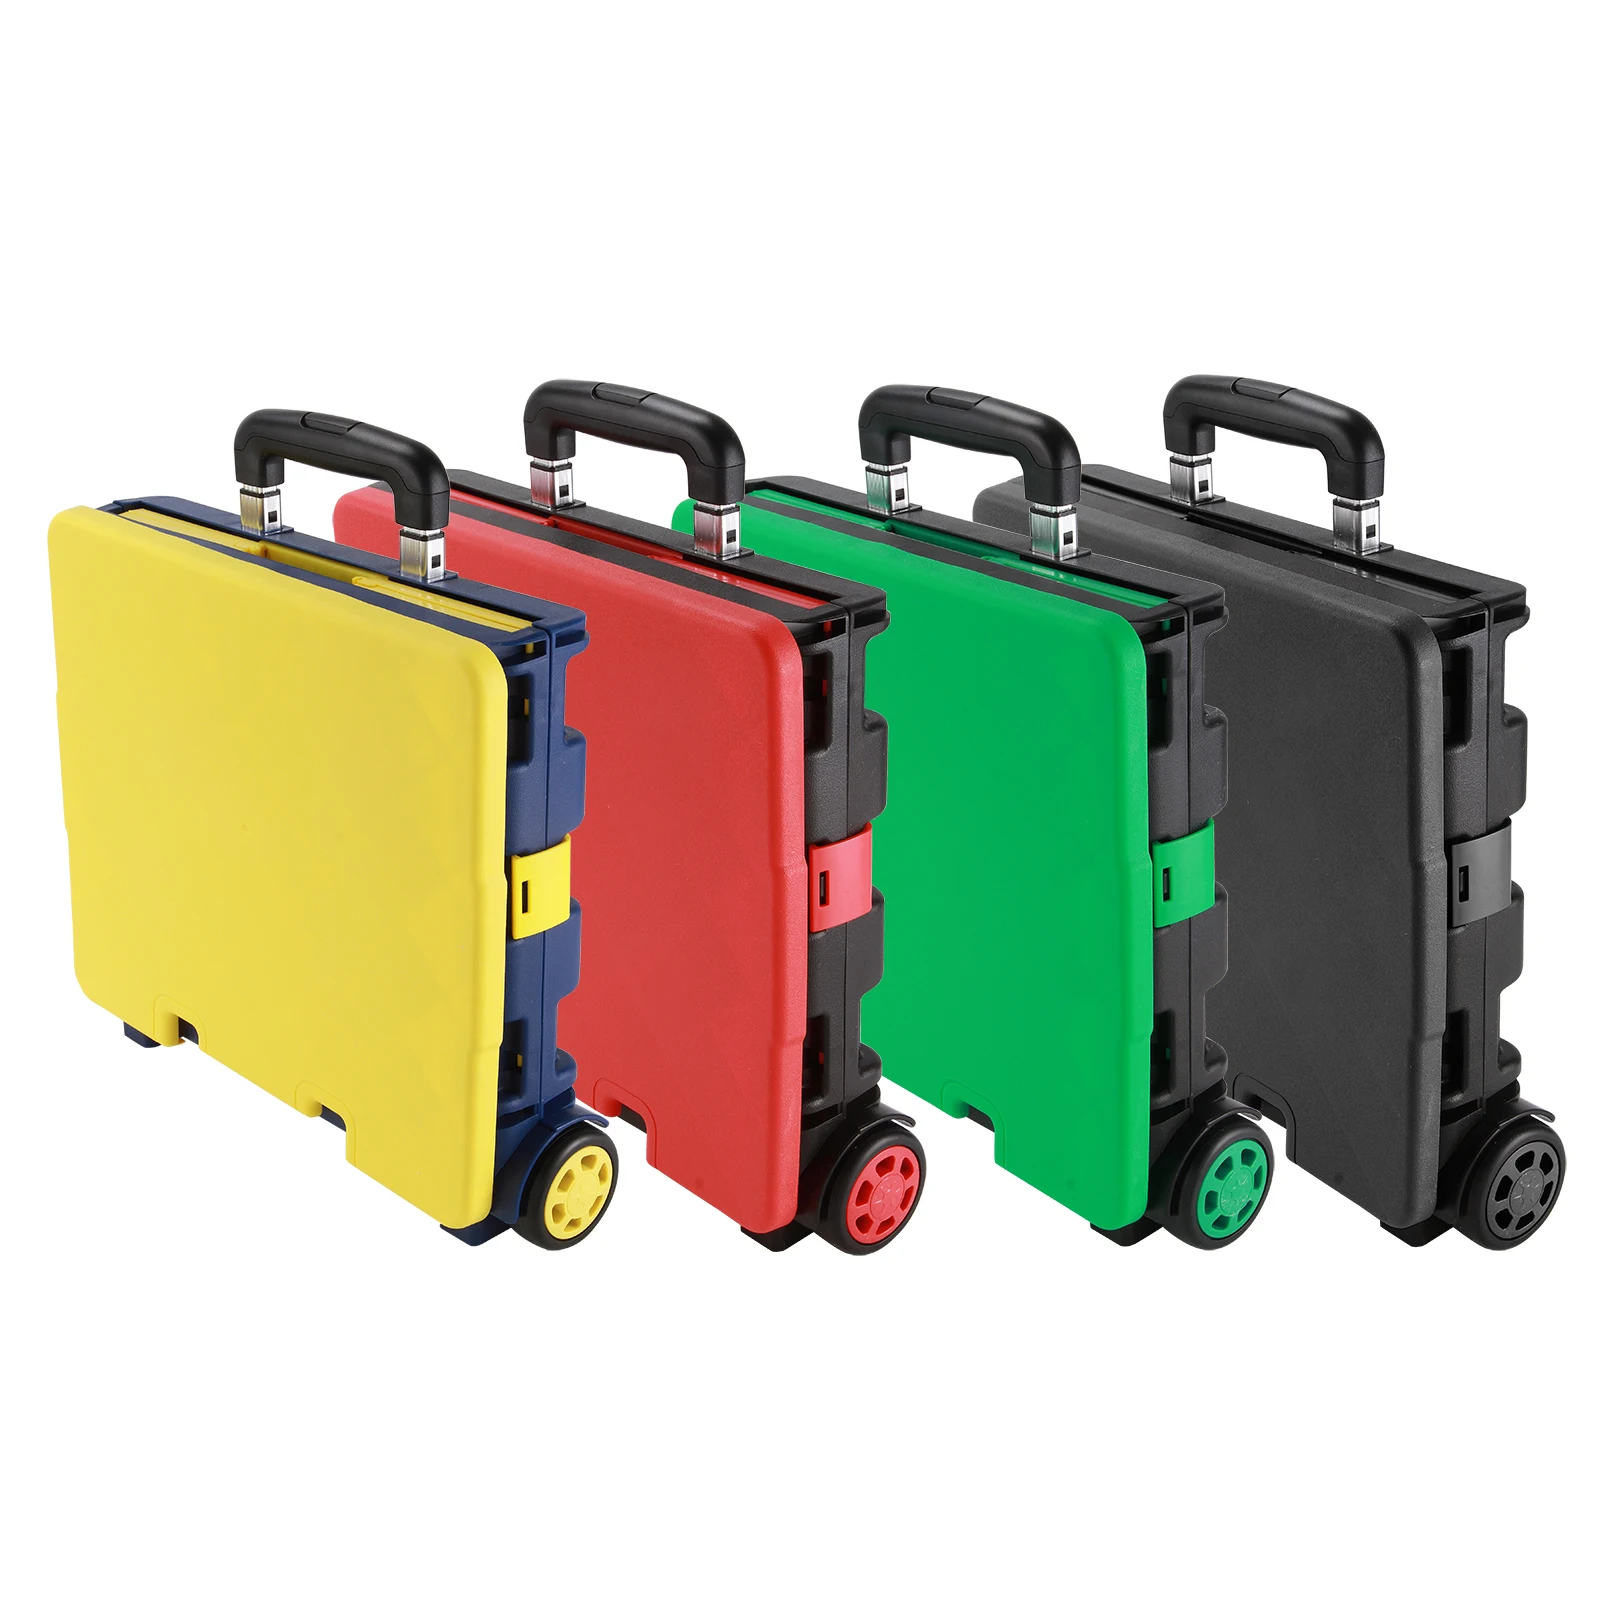 4 цвета портативная Тележка для покупок/корзина/Storag складной ботинок Тележка для покупок складывающаяся коробка для хранения колеса ящик и крышка